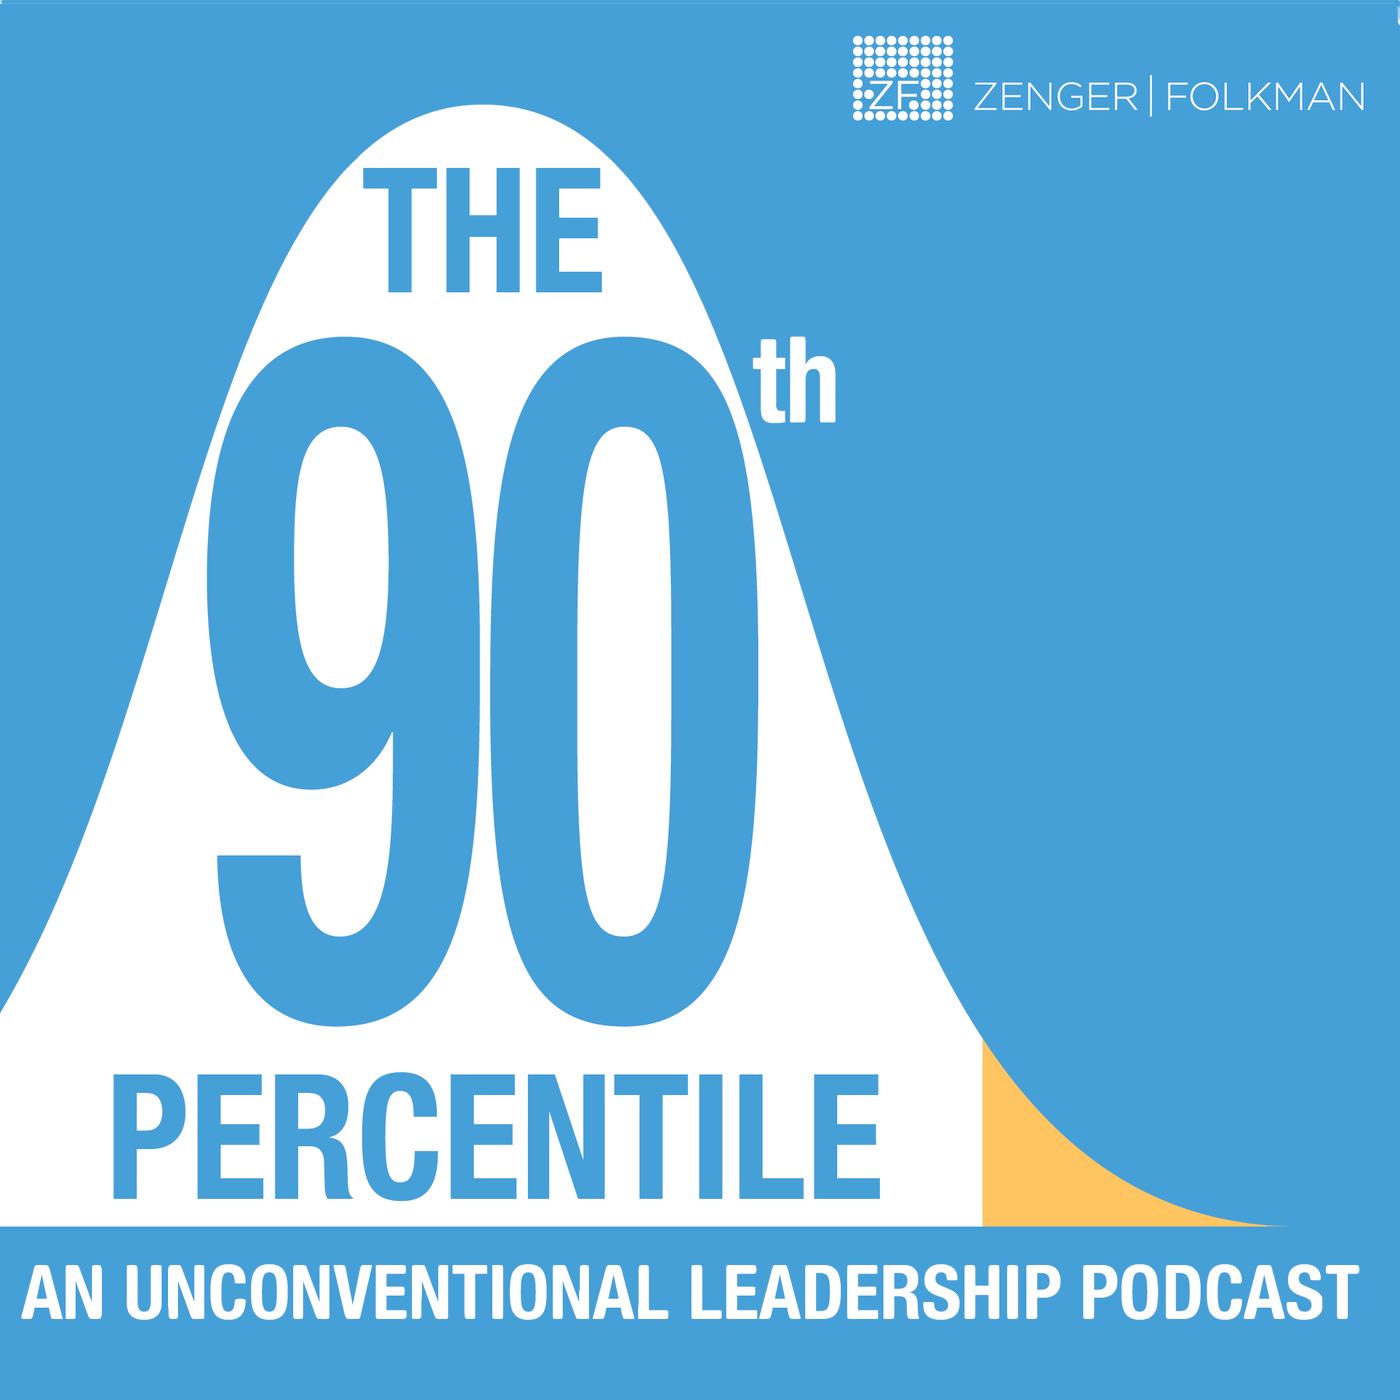 The 90th Percentile